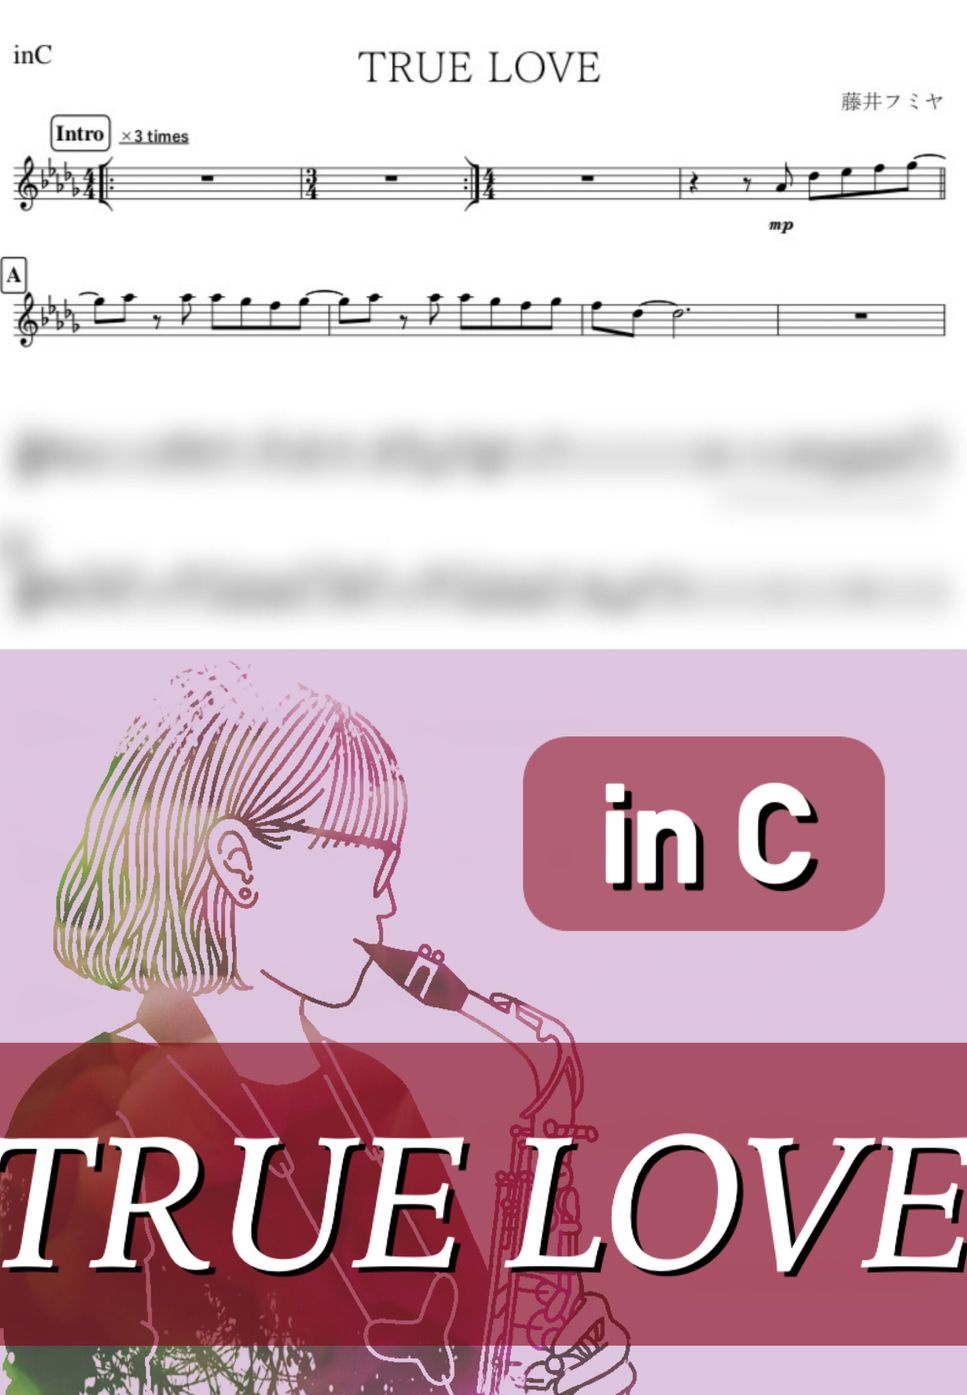 藤井フミヤ - TRUE LOVE (C) by kanamusic